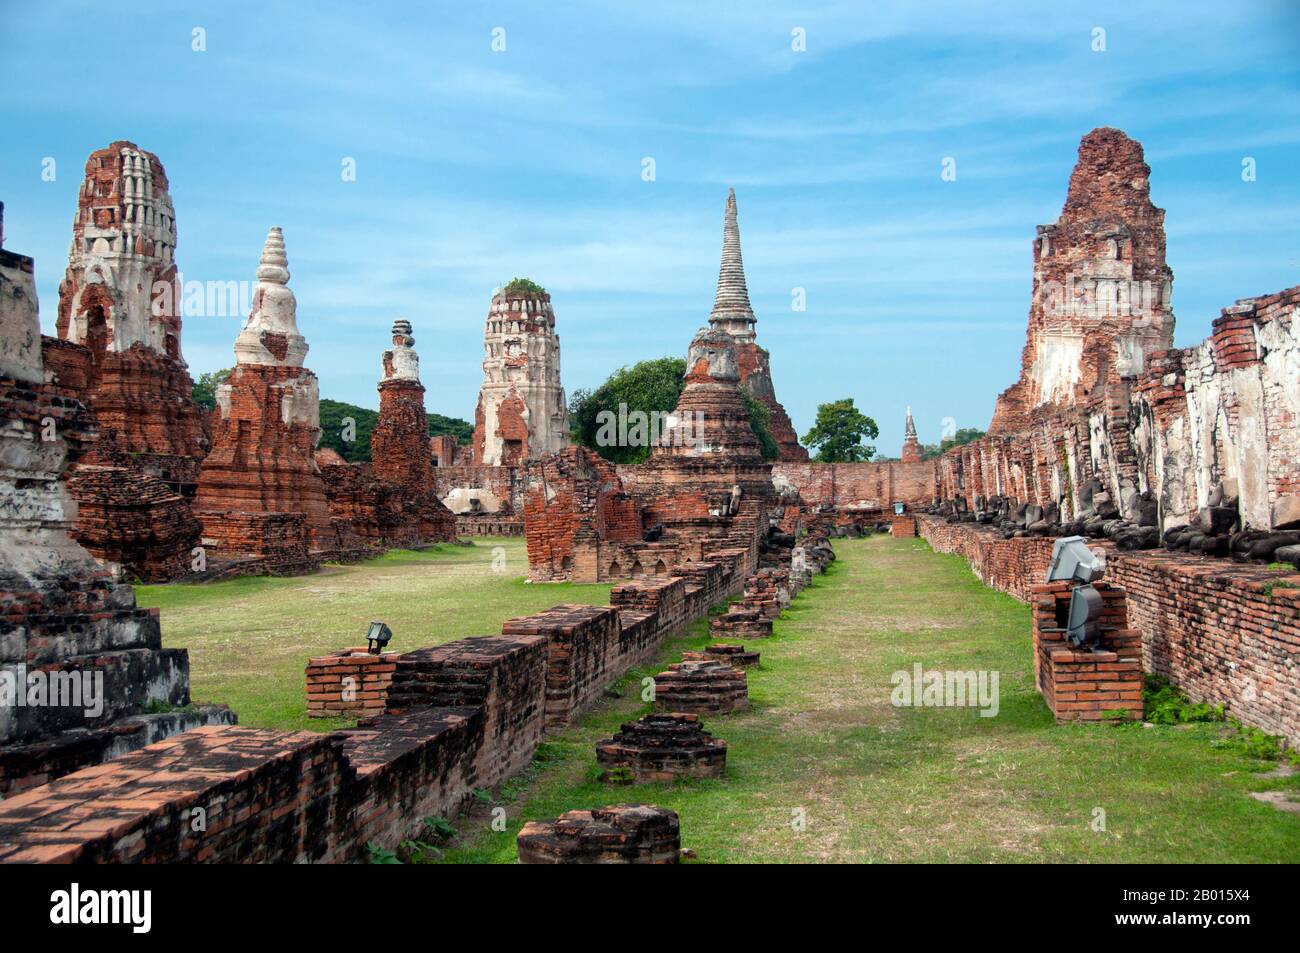 Thailandia: Wat Phra Mahathat, Ayutthaya Historical Park. Wat Phra Mahathat fu costruito durante il regno di Borommaracha i (Boromma Rachathirat i) o Khun Luang Pa Ngua (1370-1388), che era il terzo re del regno di Ayutthaya. Ayutthaya (Ayudhya) era un regno siamese che esisteva dal 1351 al 1767. Ayutthaya era amichevole verso i commercianti stranieri, compreso il cinese, vietnamita (Annamese), indiani, giapponesi e persiani, E poi i portoghesi, spagnoli, olandesi e francesi, permettendo loro di creare villaggi fuori dalle mura della città. Foto Stock